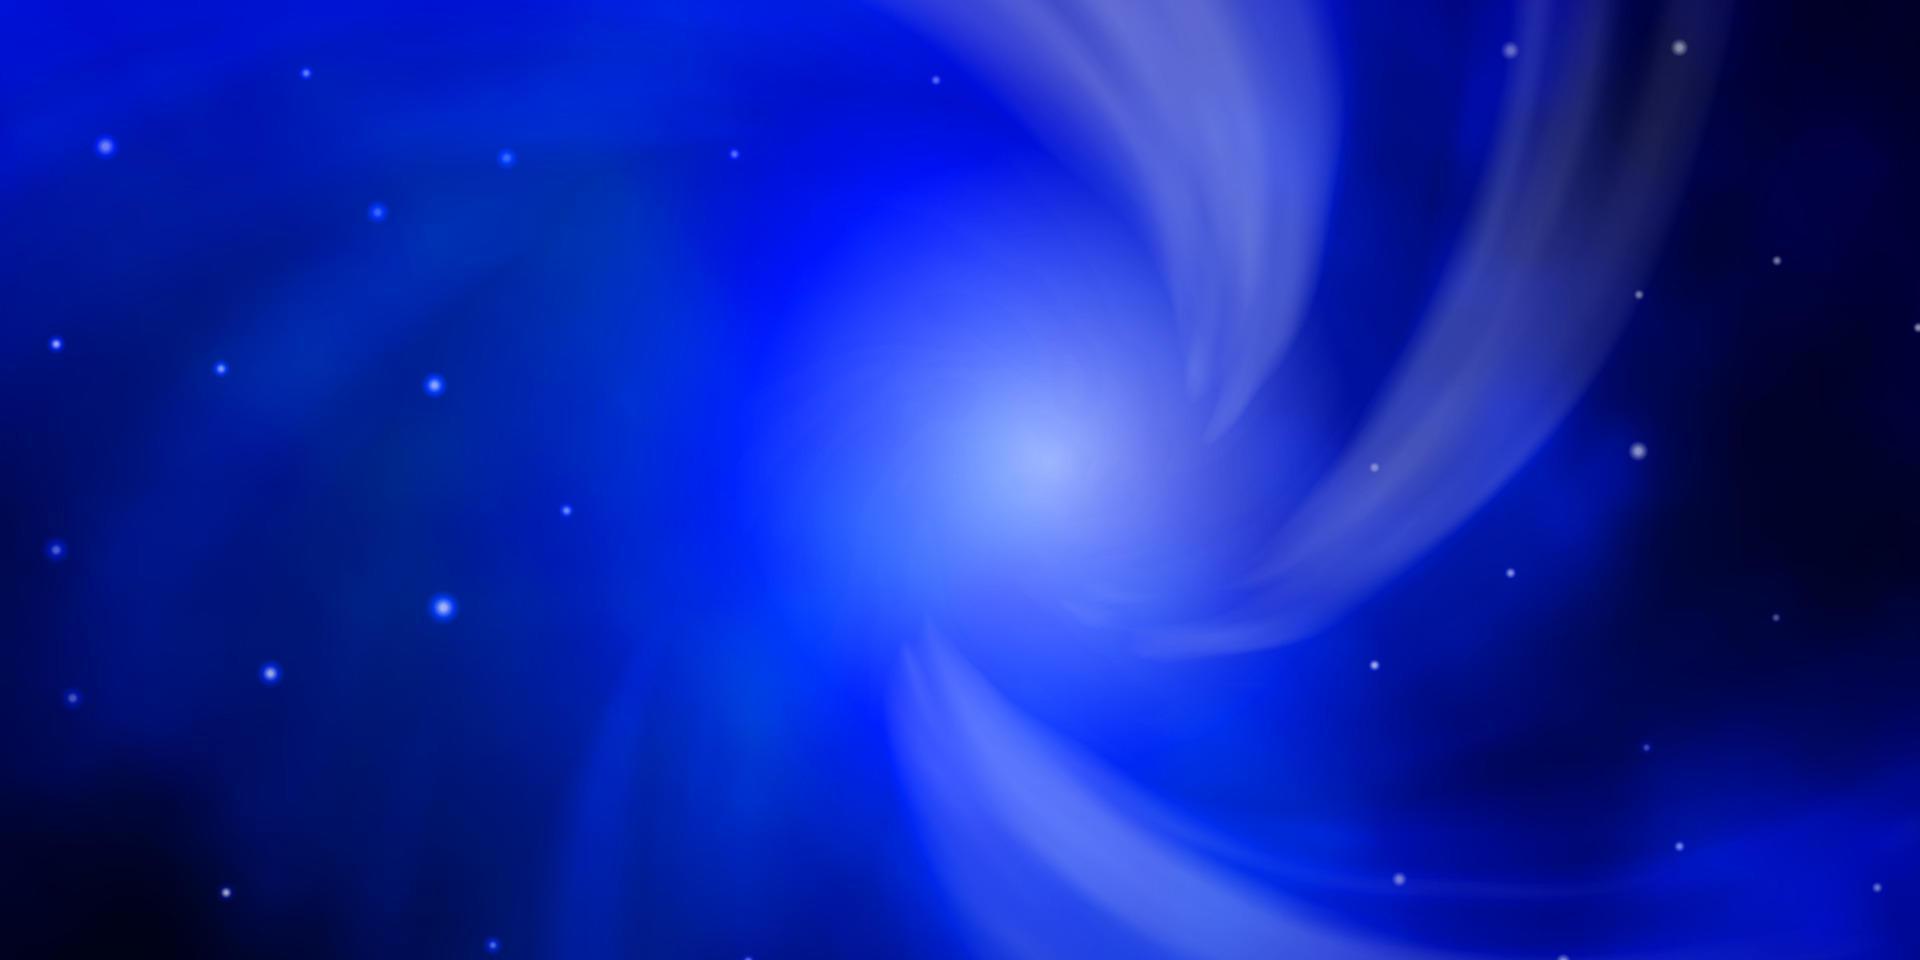 donkerblauwe vectorachtergrond met kleurrijke sterren. vector